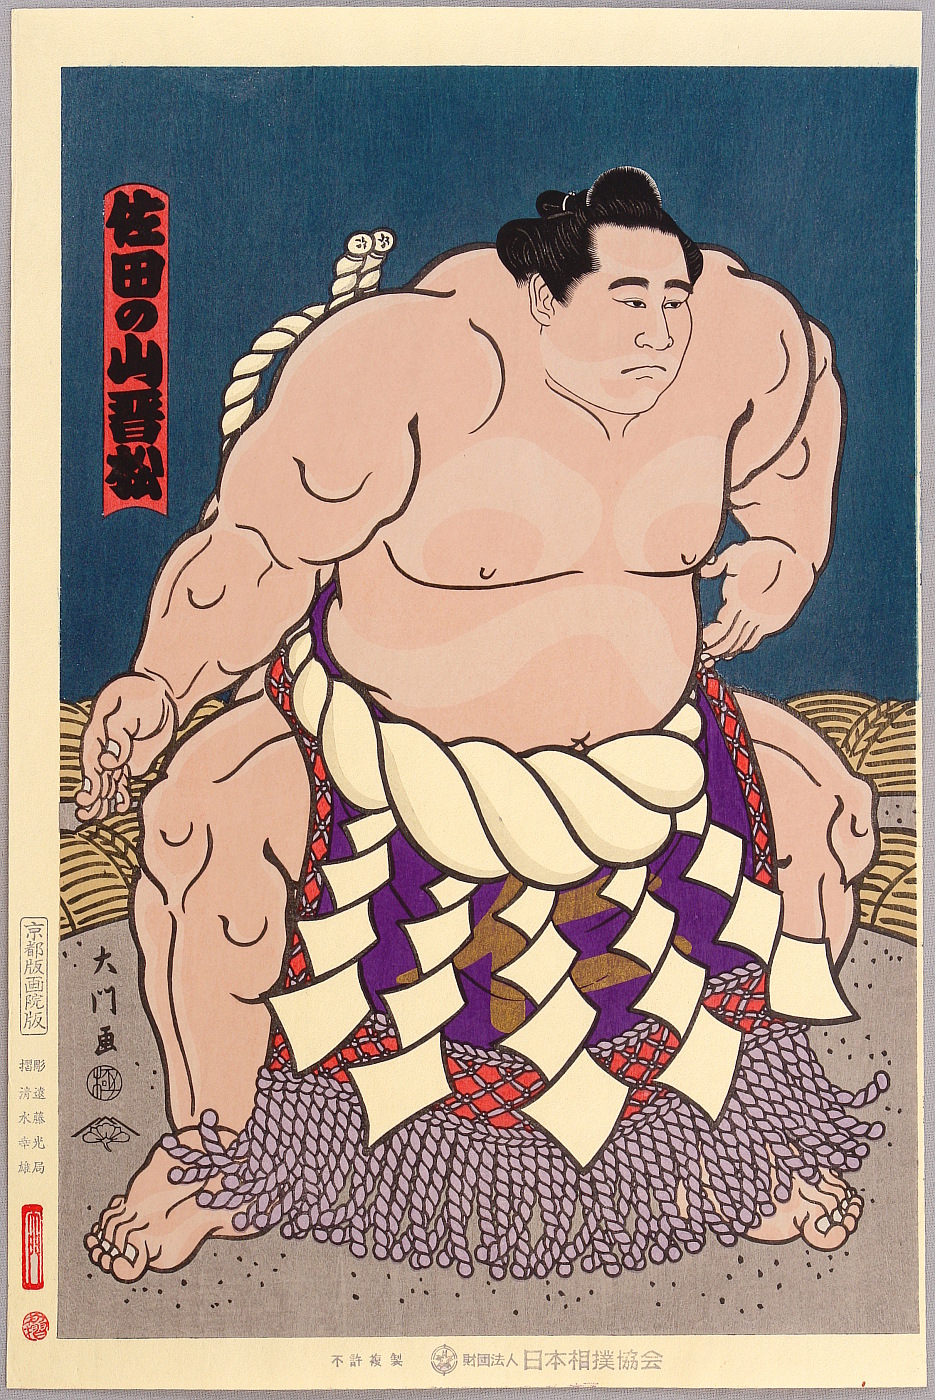 Daimon: Champion Sumo Wrestler, Artelino - 浮世絵検索